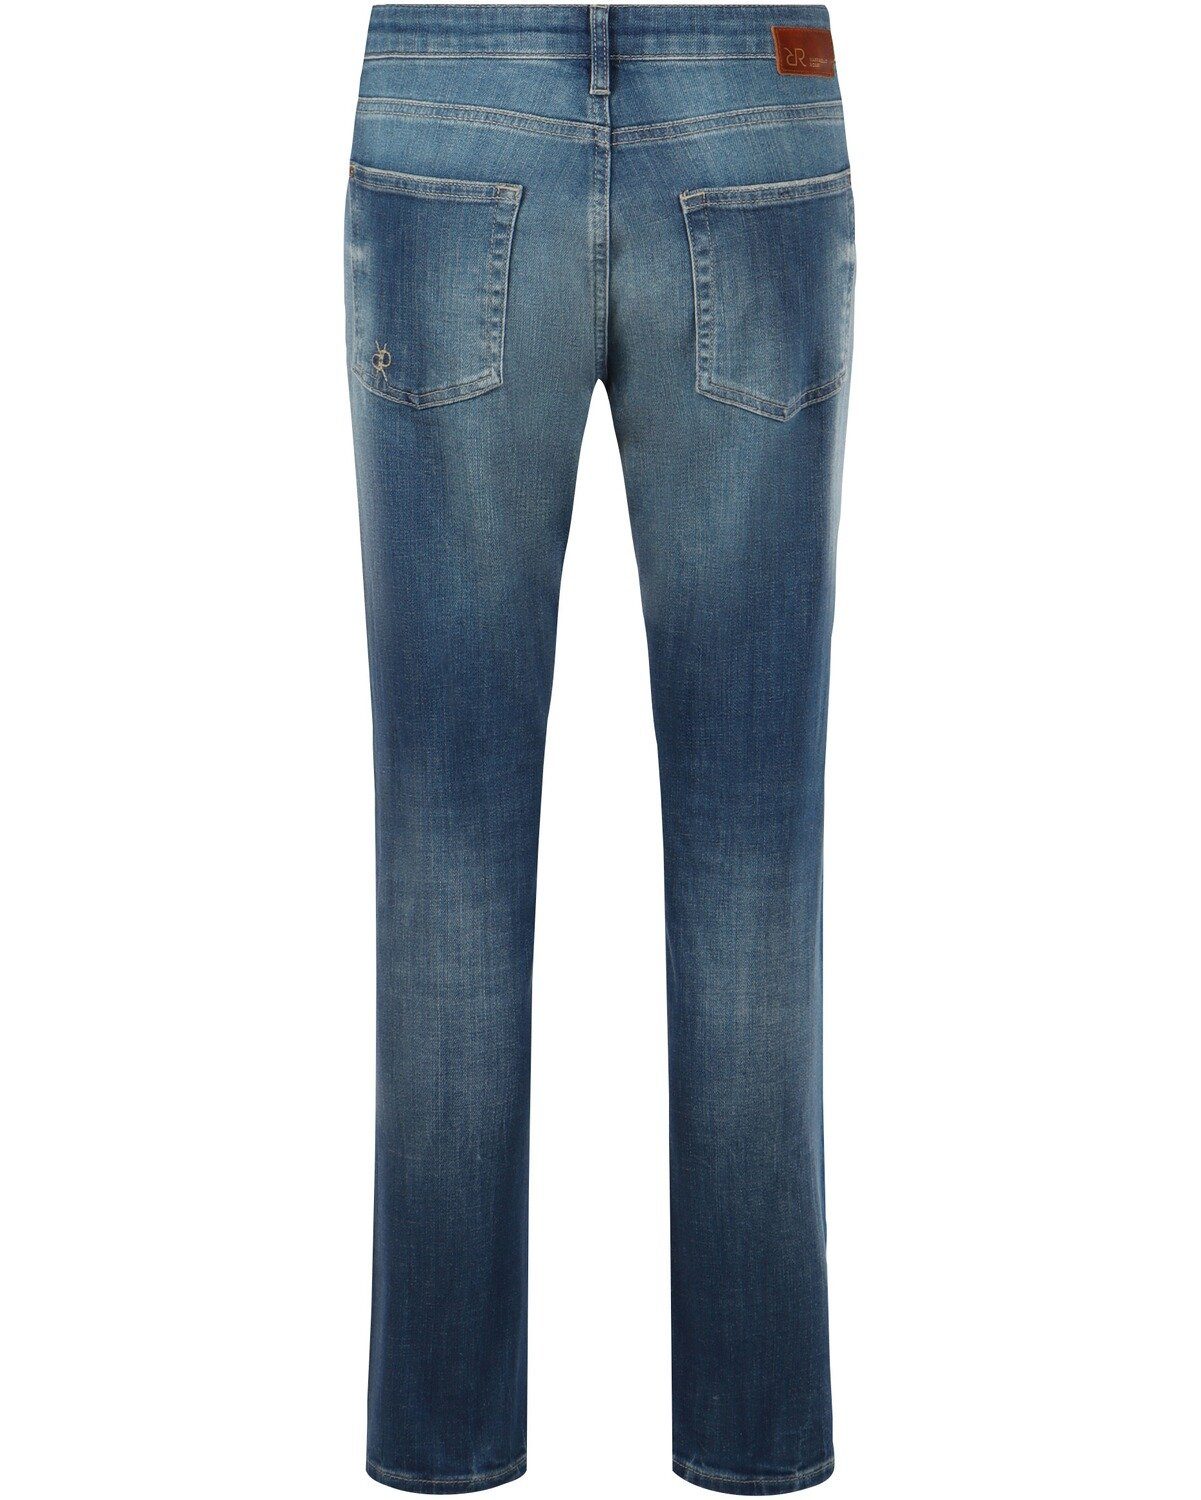 Raffaello Rossi 5-Pocket-Jeans Jeans Darcy